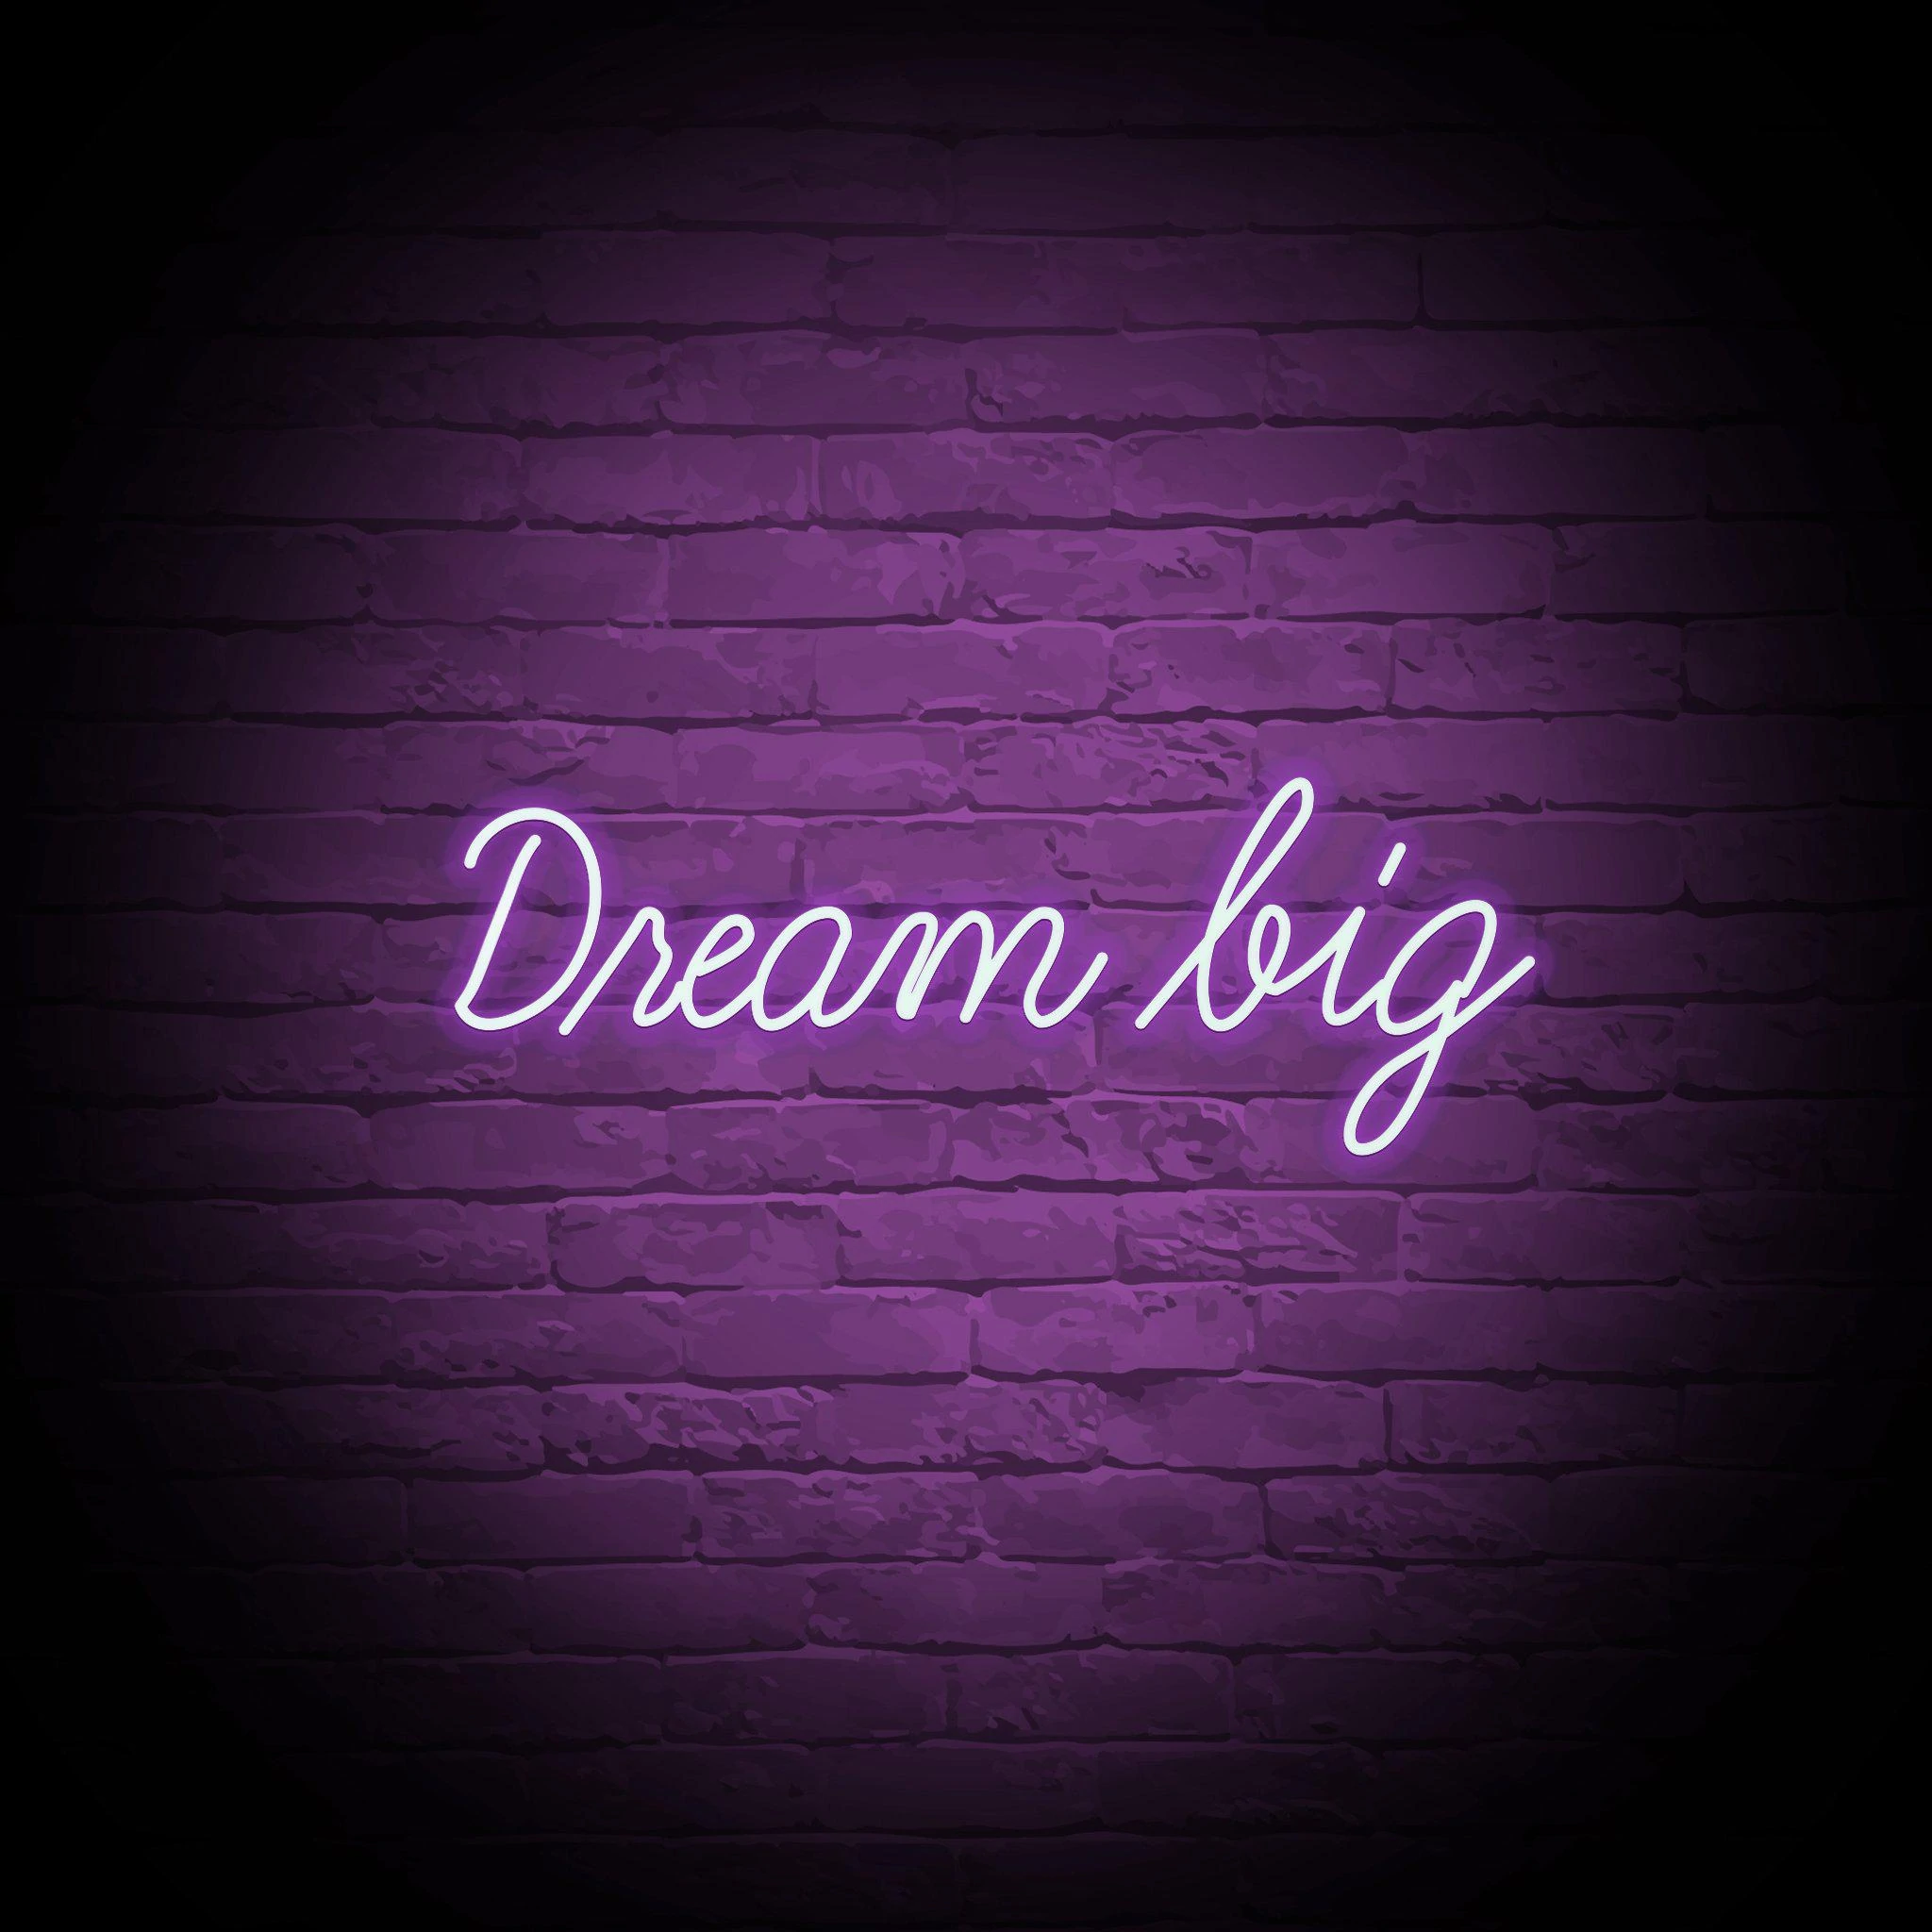 'DREAM BIG' NEON SIGN